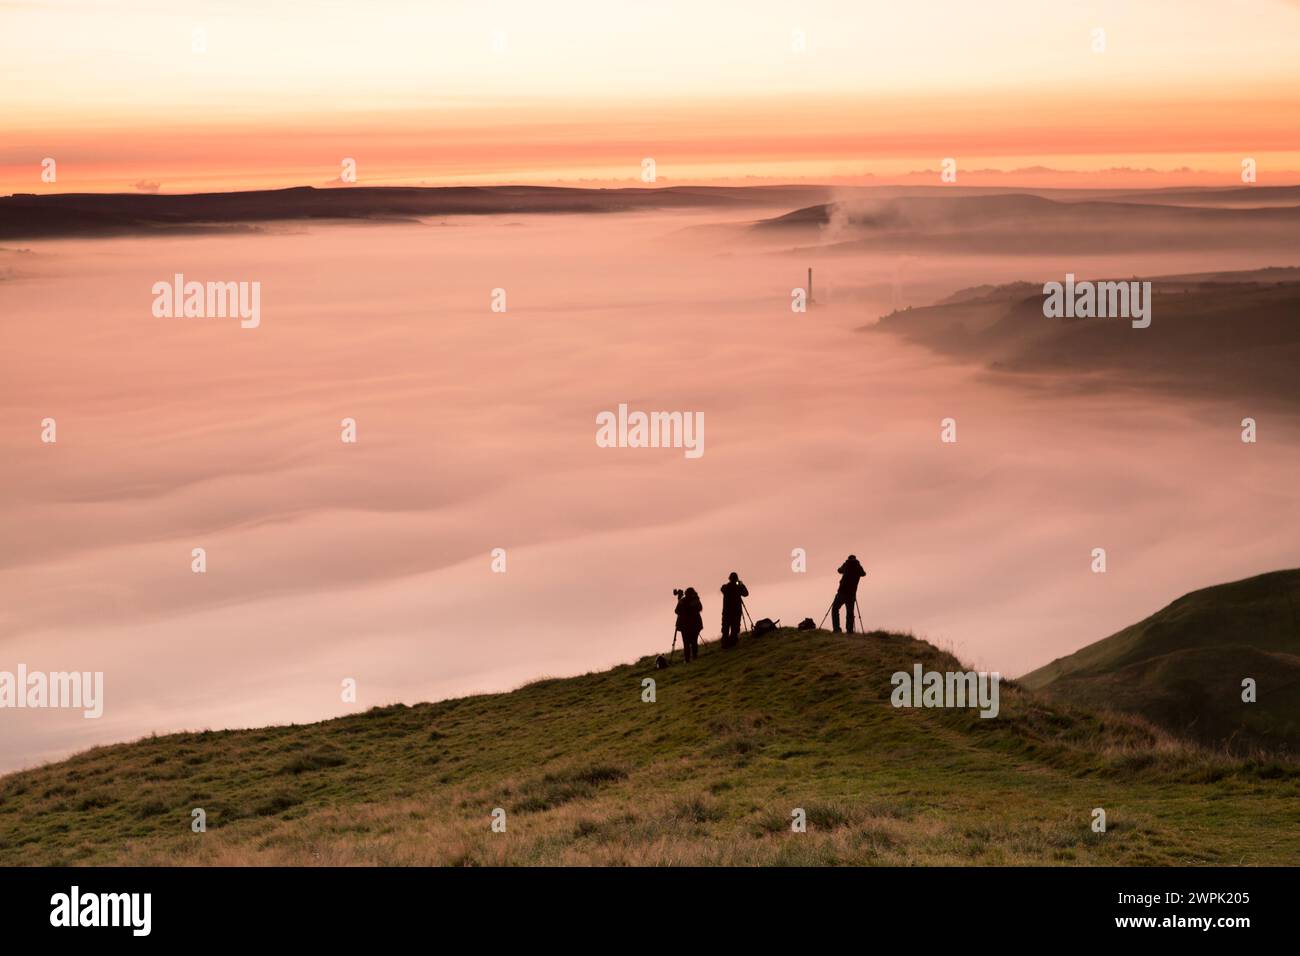 Royaume-Uni, Hope Valley, photographes photographiant l'inversion/la brume dans Hope Valley au lever du soleil - Peak District. Banque D'Images